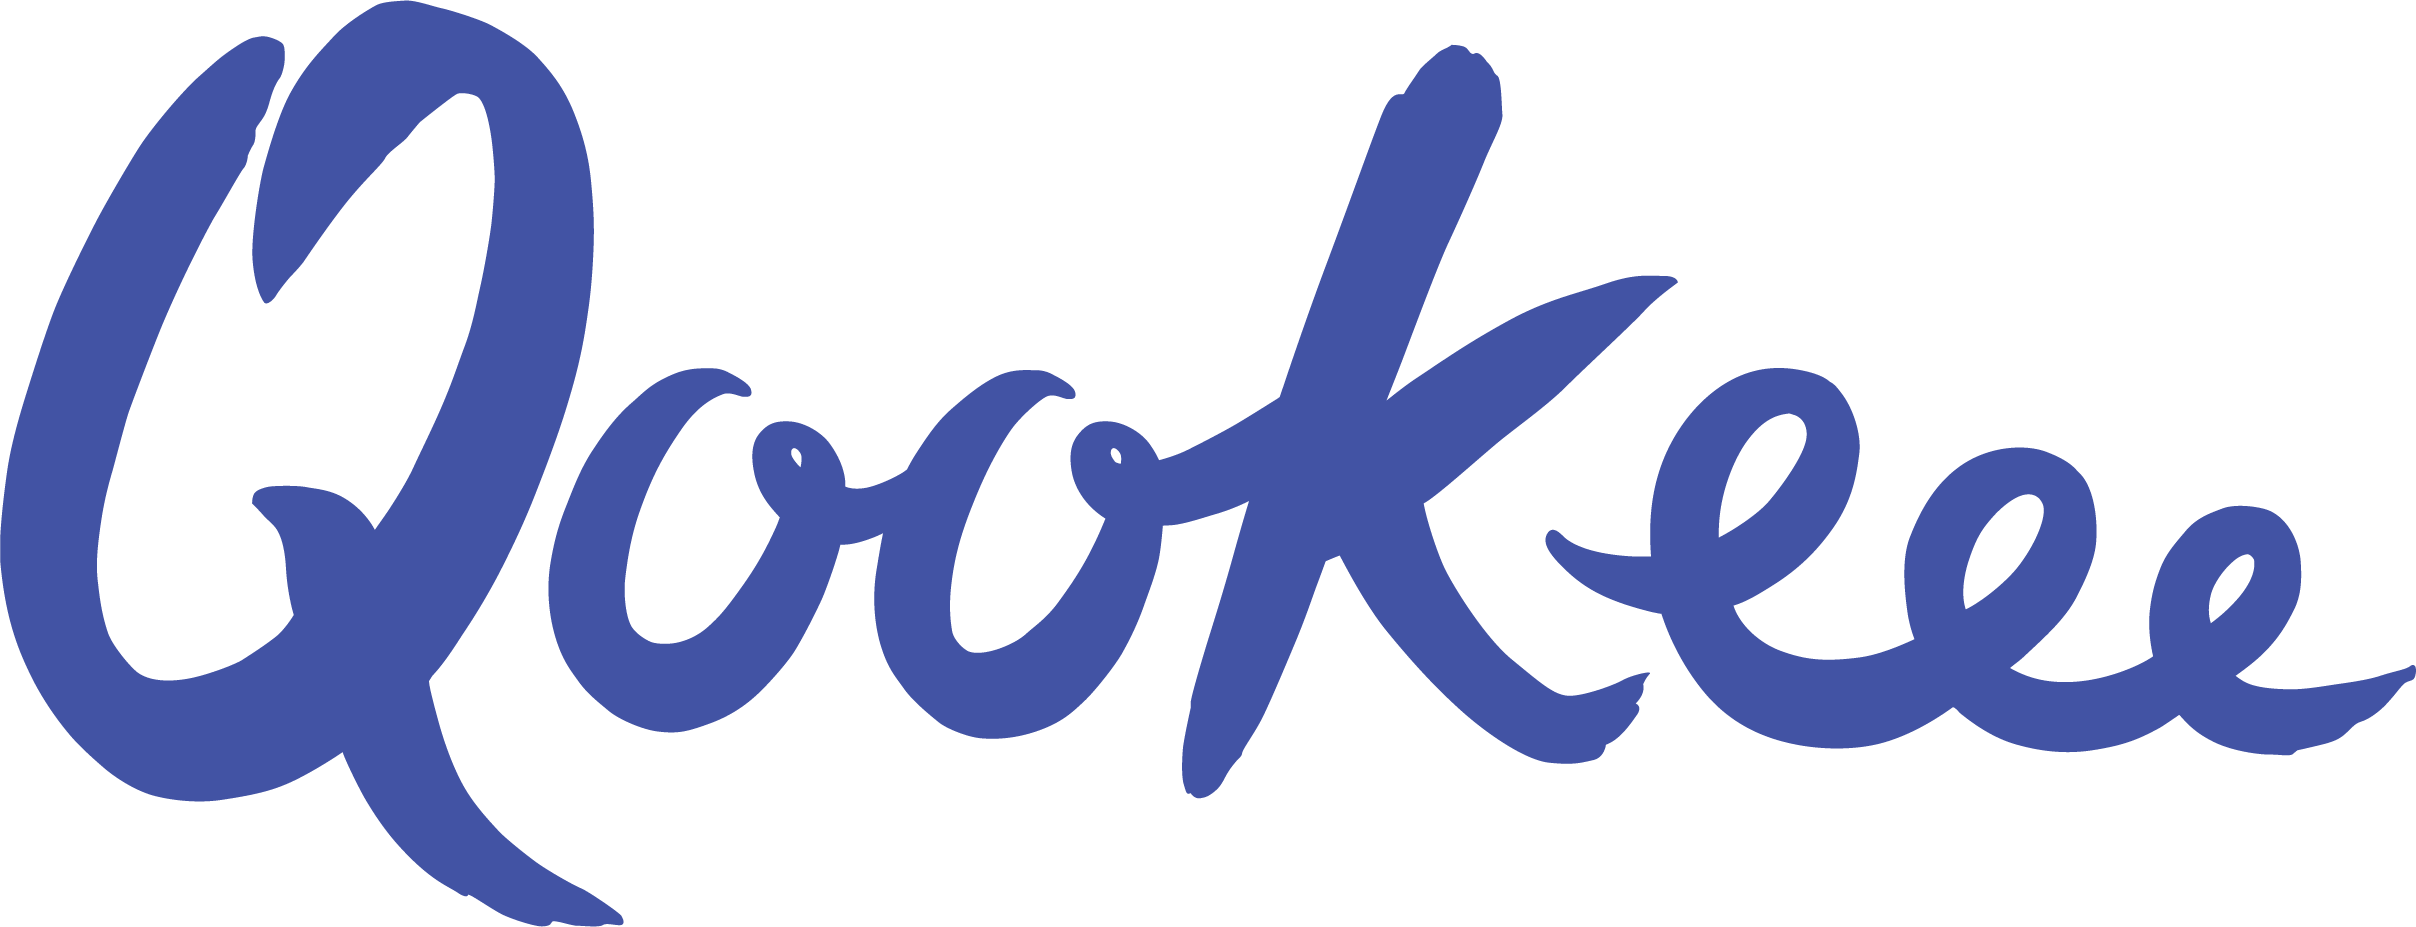 Qookeee's logo